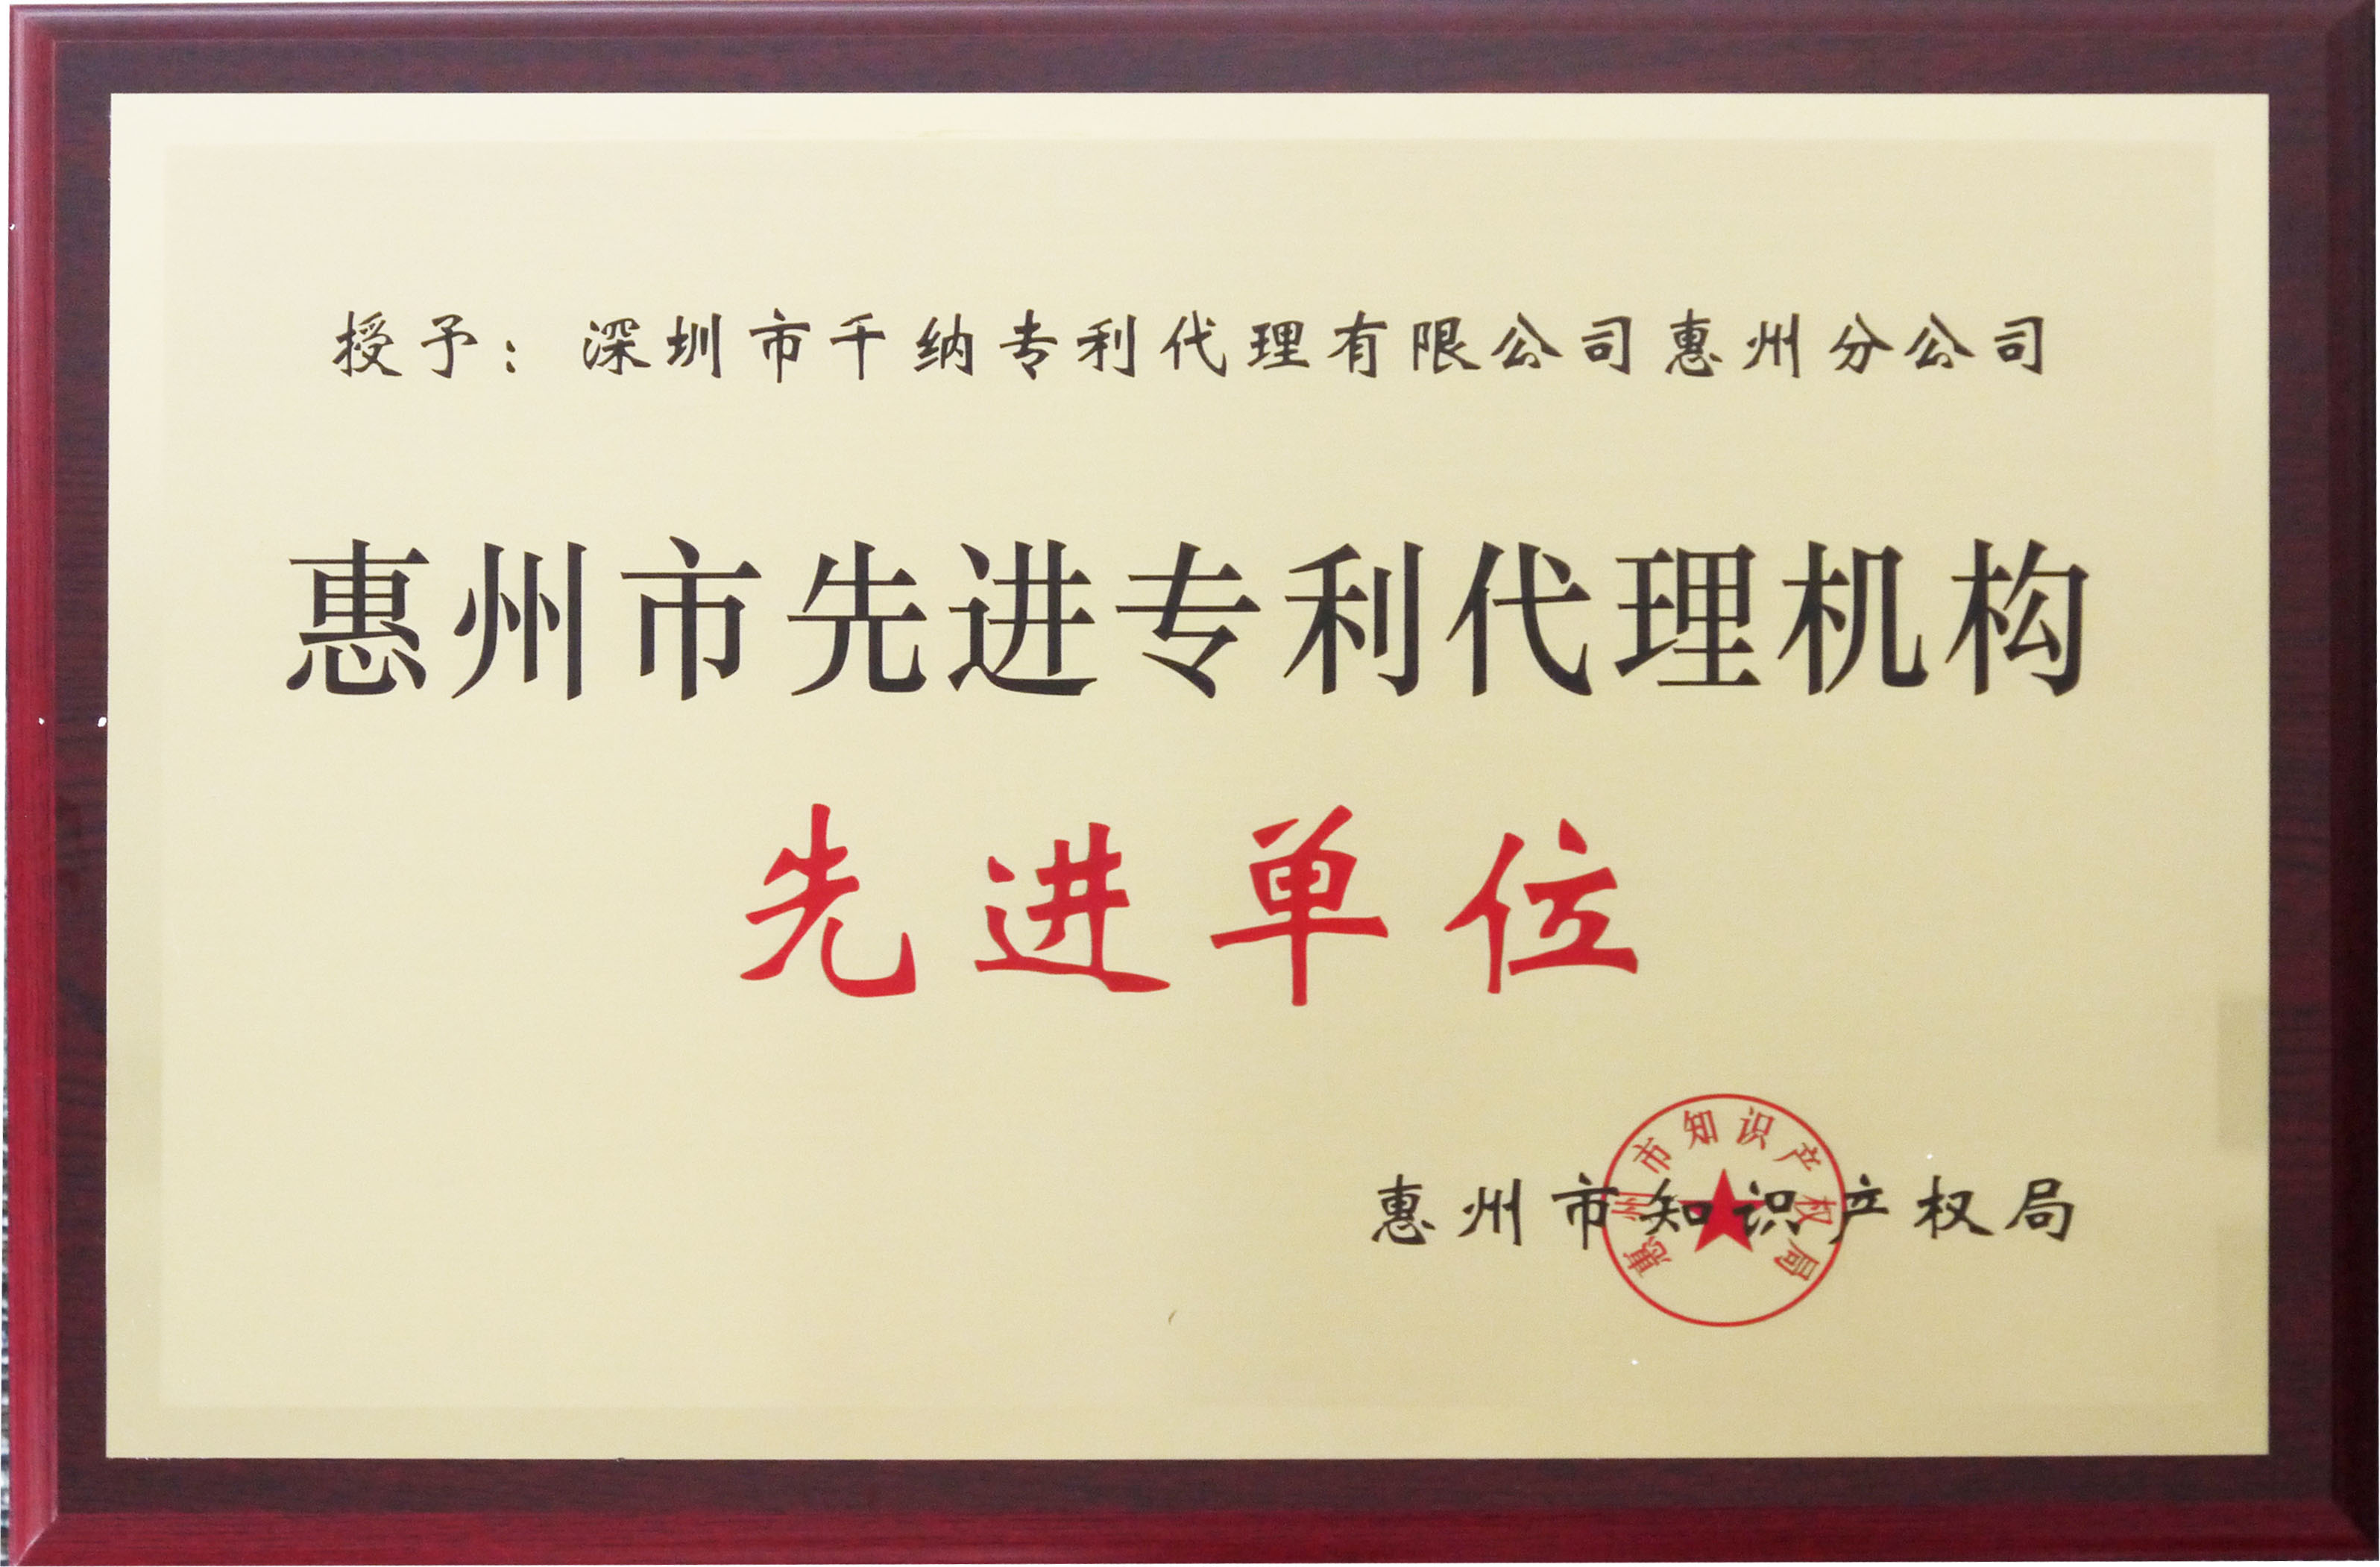 惠州市优秀专利代理机构先进单位